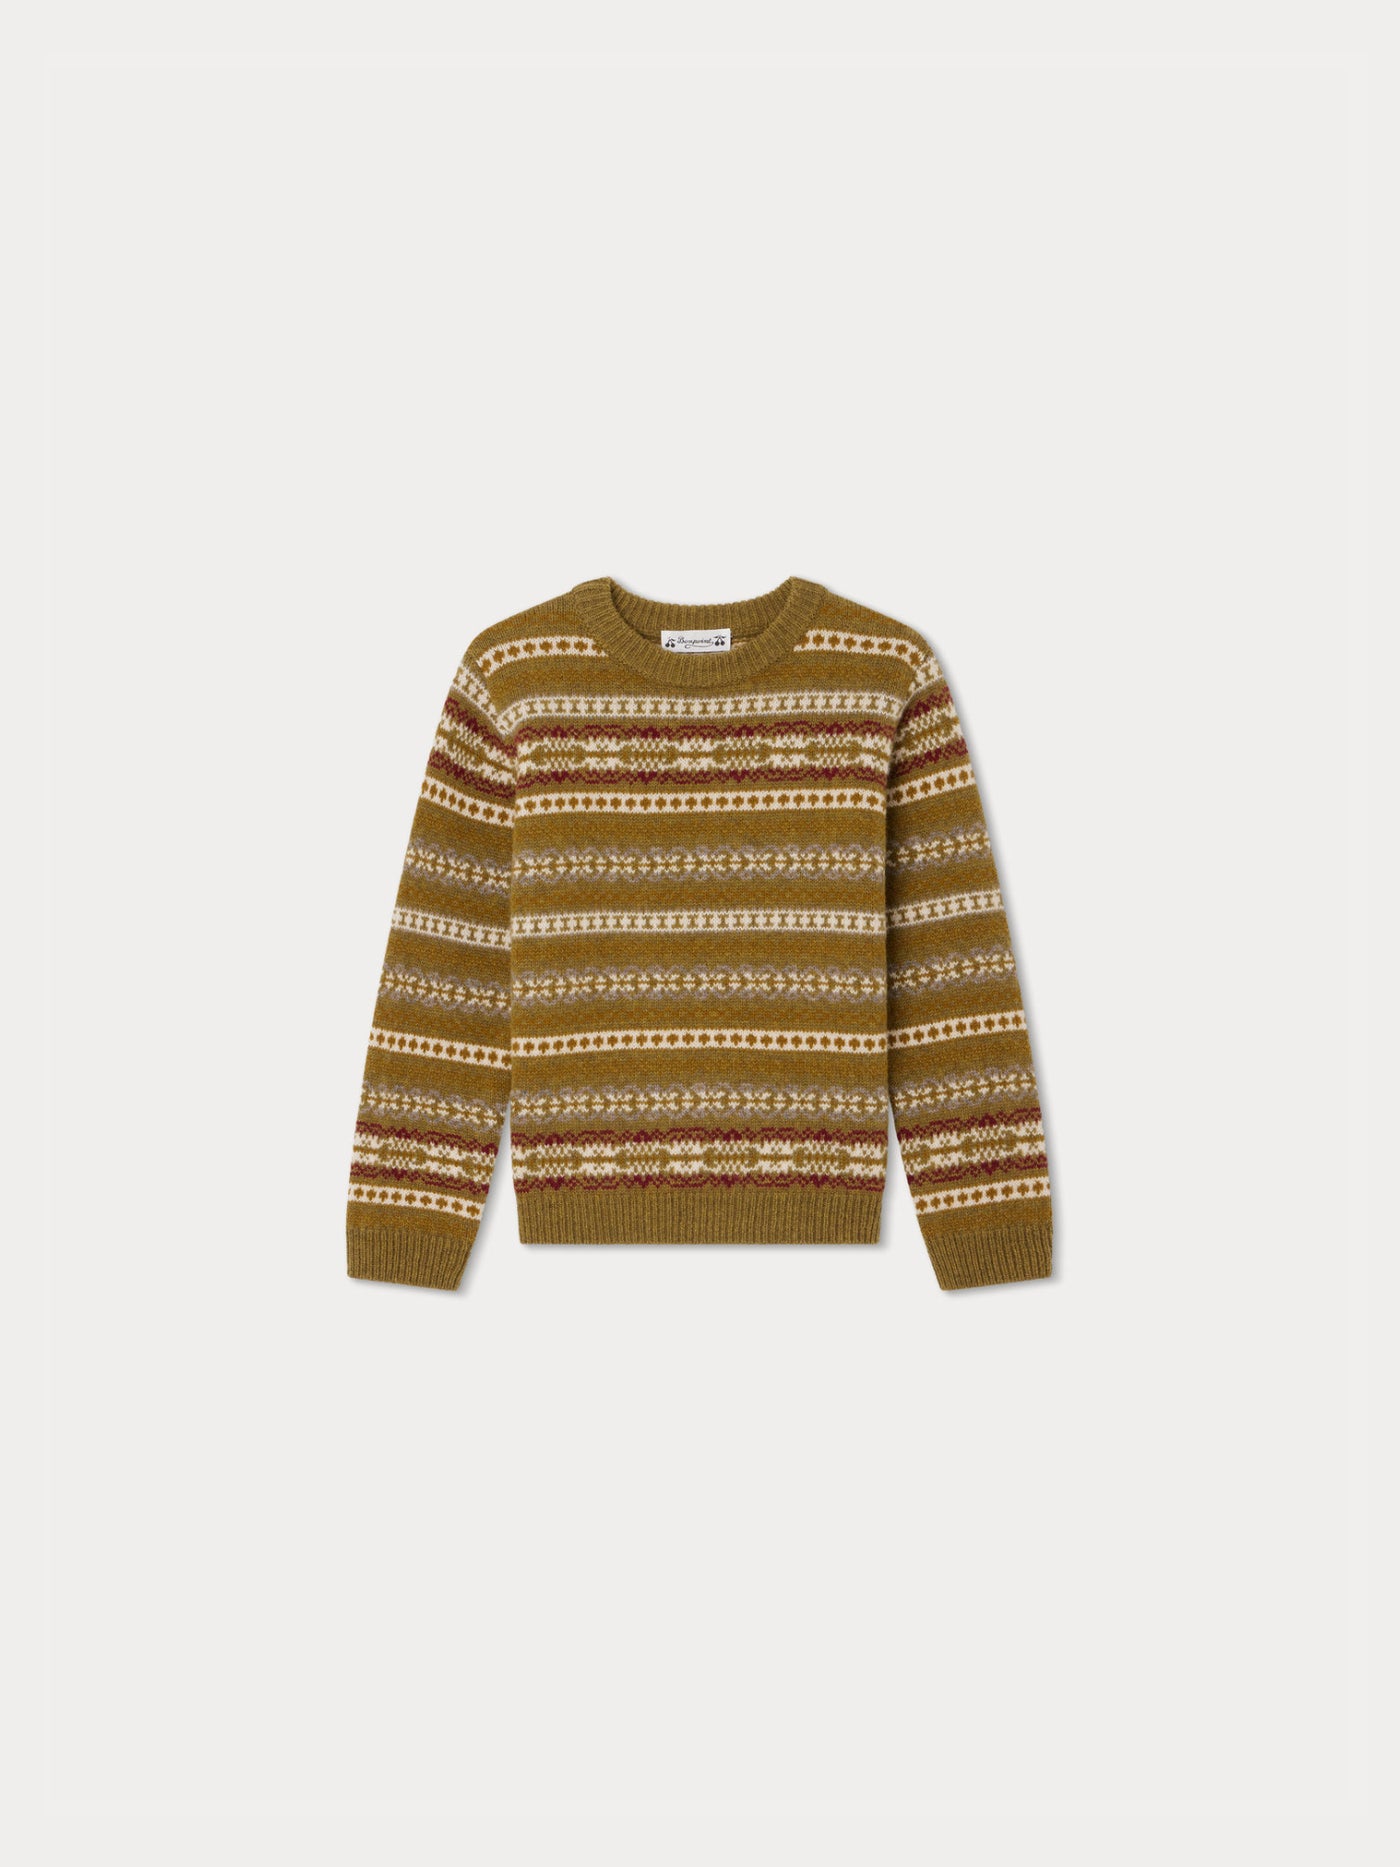 Daegan Sweater light khaki